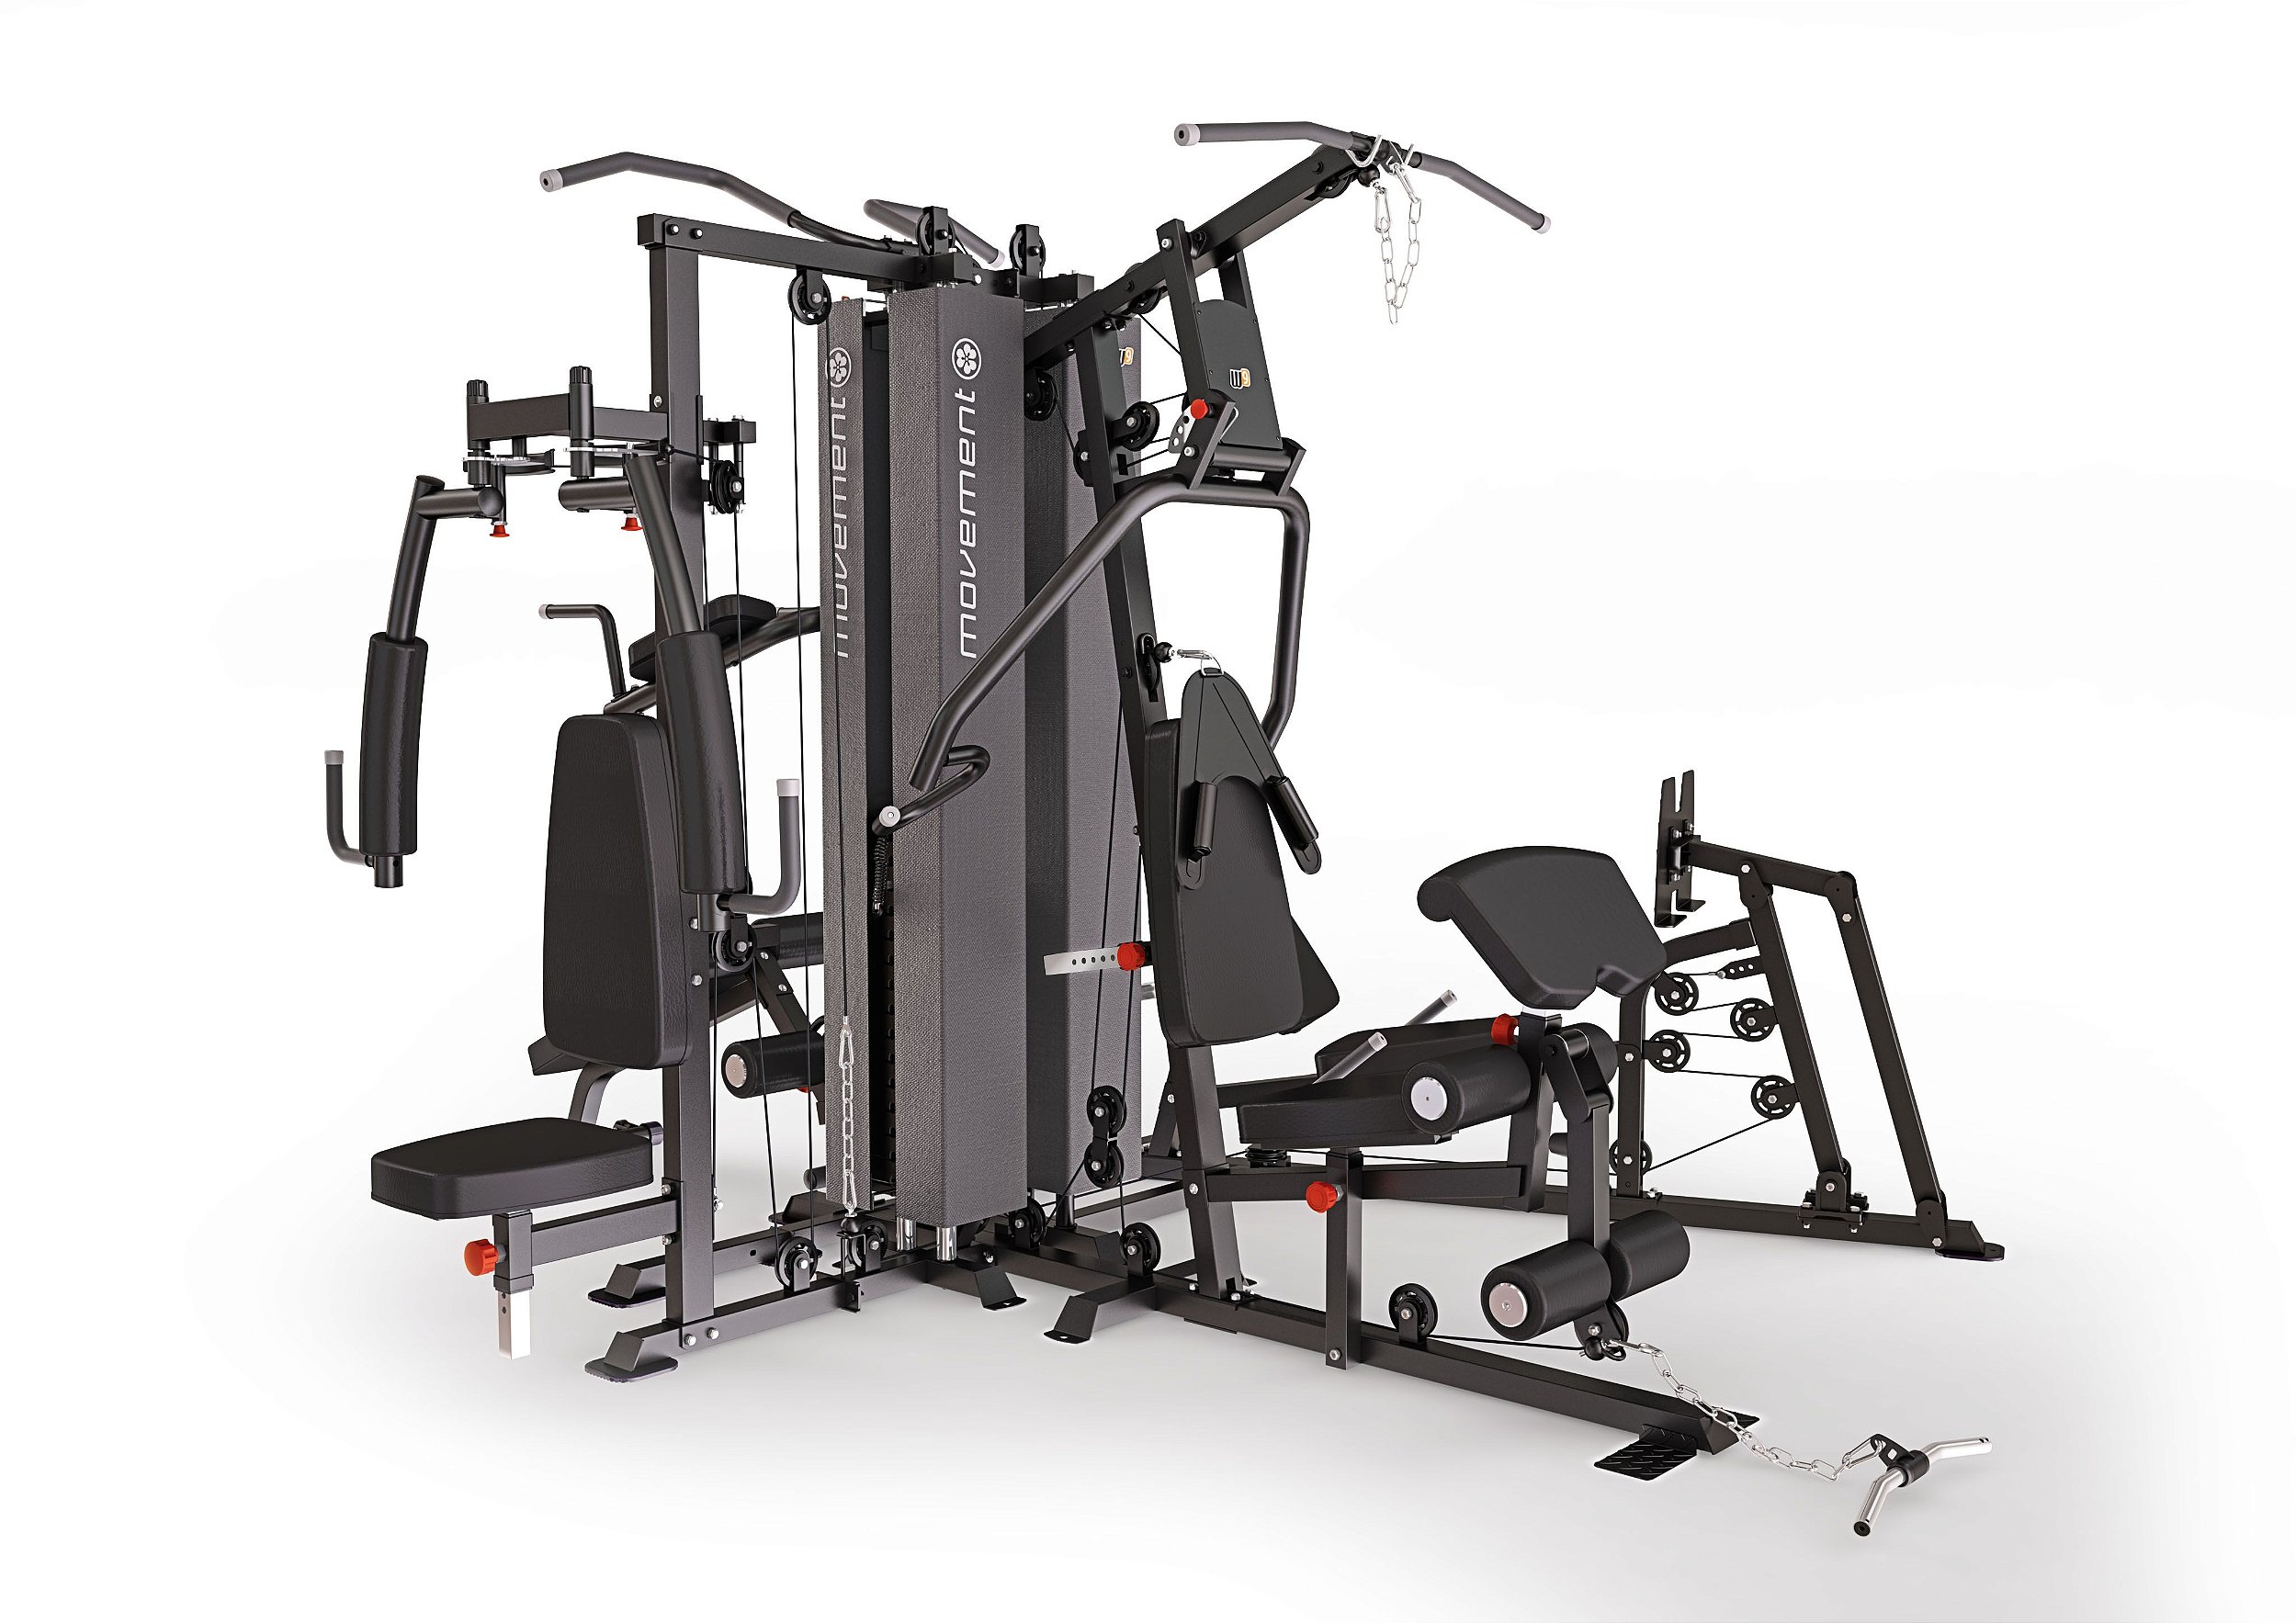 Estação Musculação Movement W9 - Schneiders® Fitness